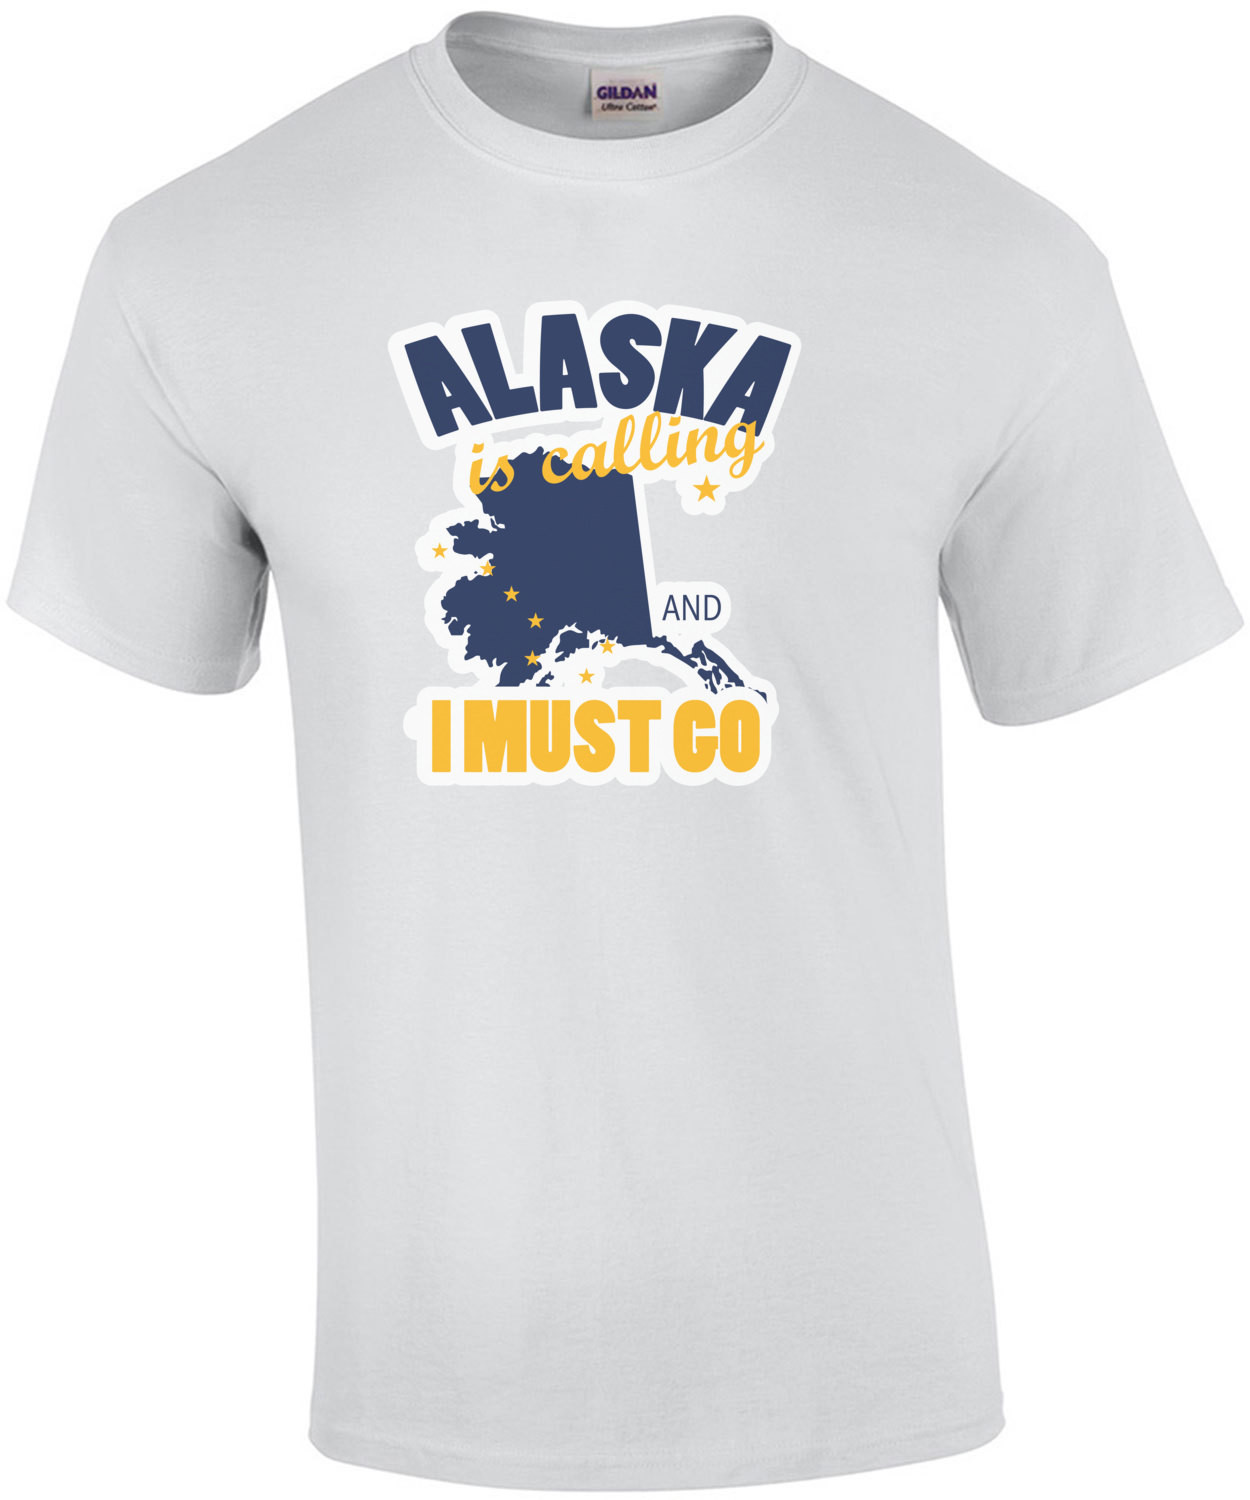 Alaska is calling and I must go - Alaska T-Shirt